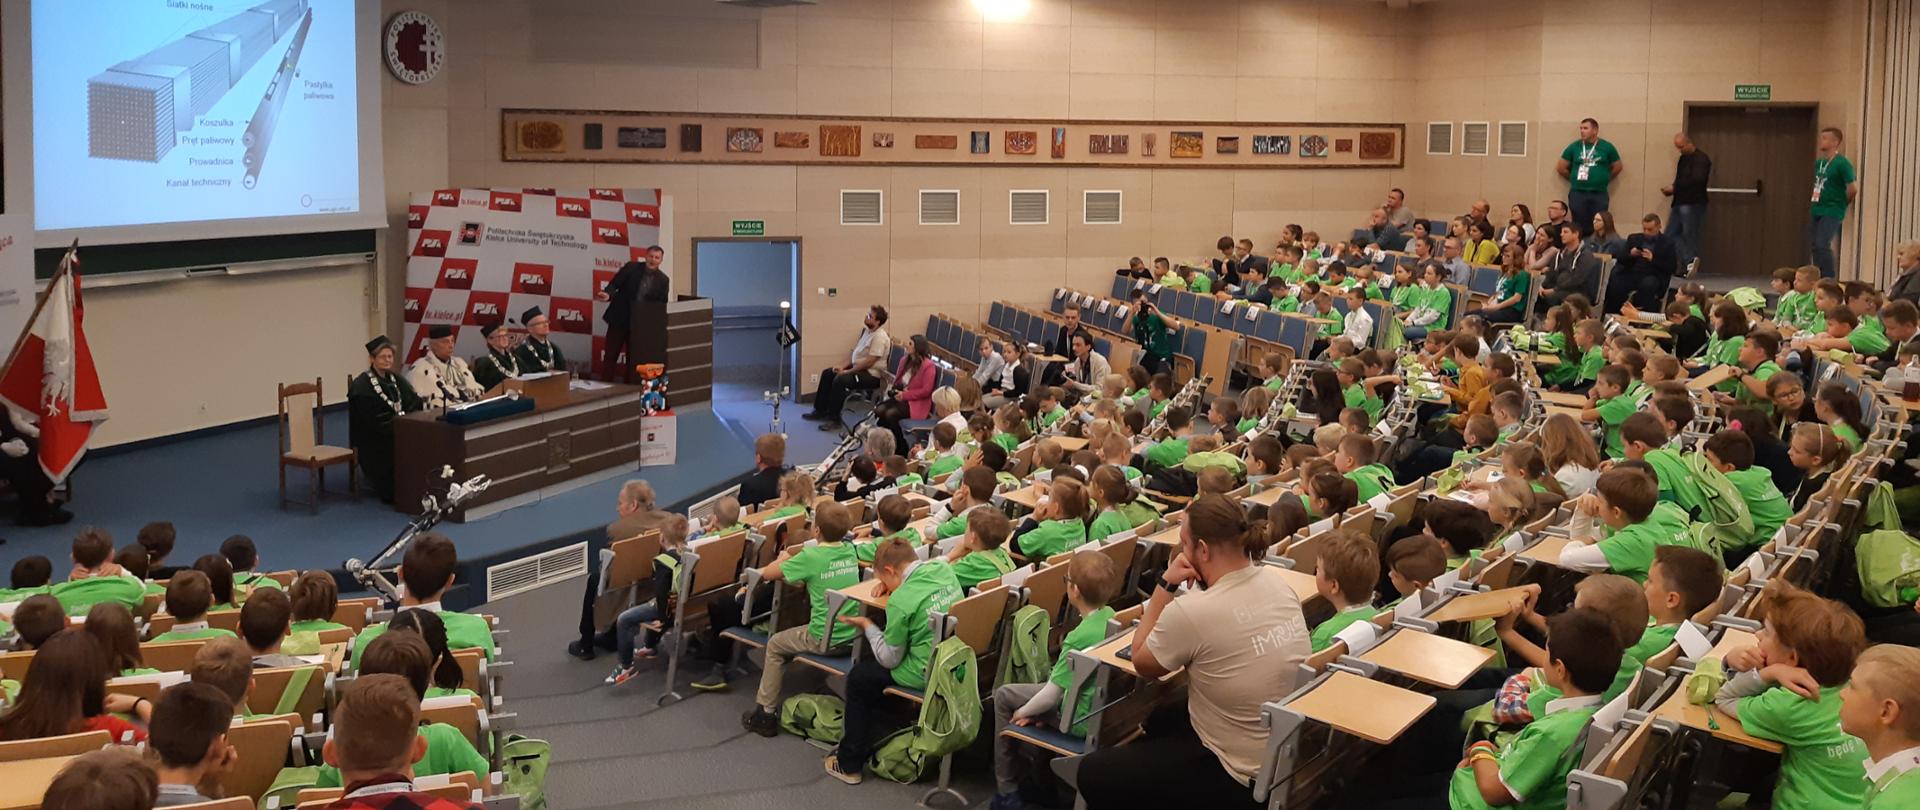 Wykład o atomie na inaugurację Dziecięcej Politechniki Świętokrzyskiej